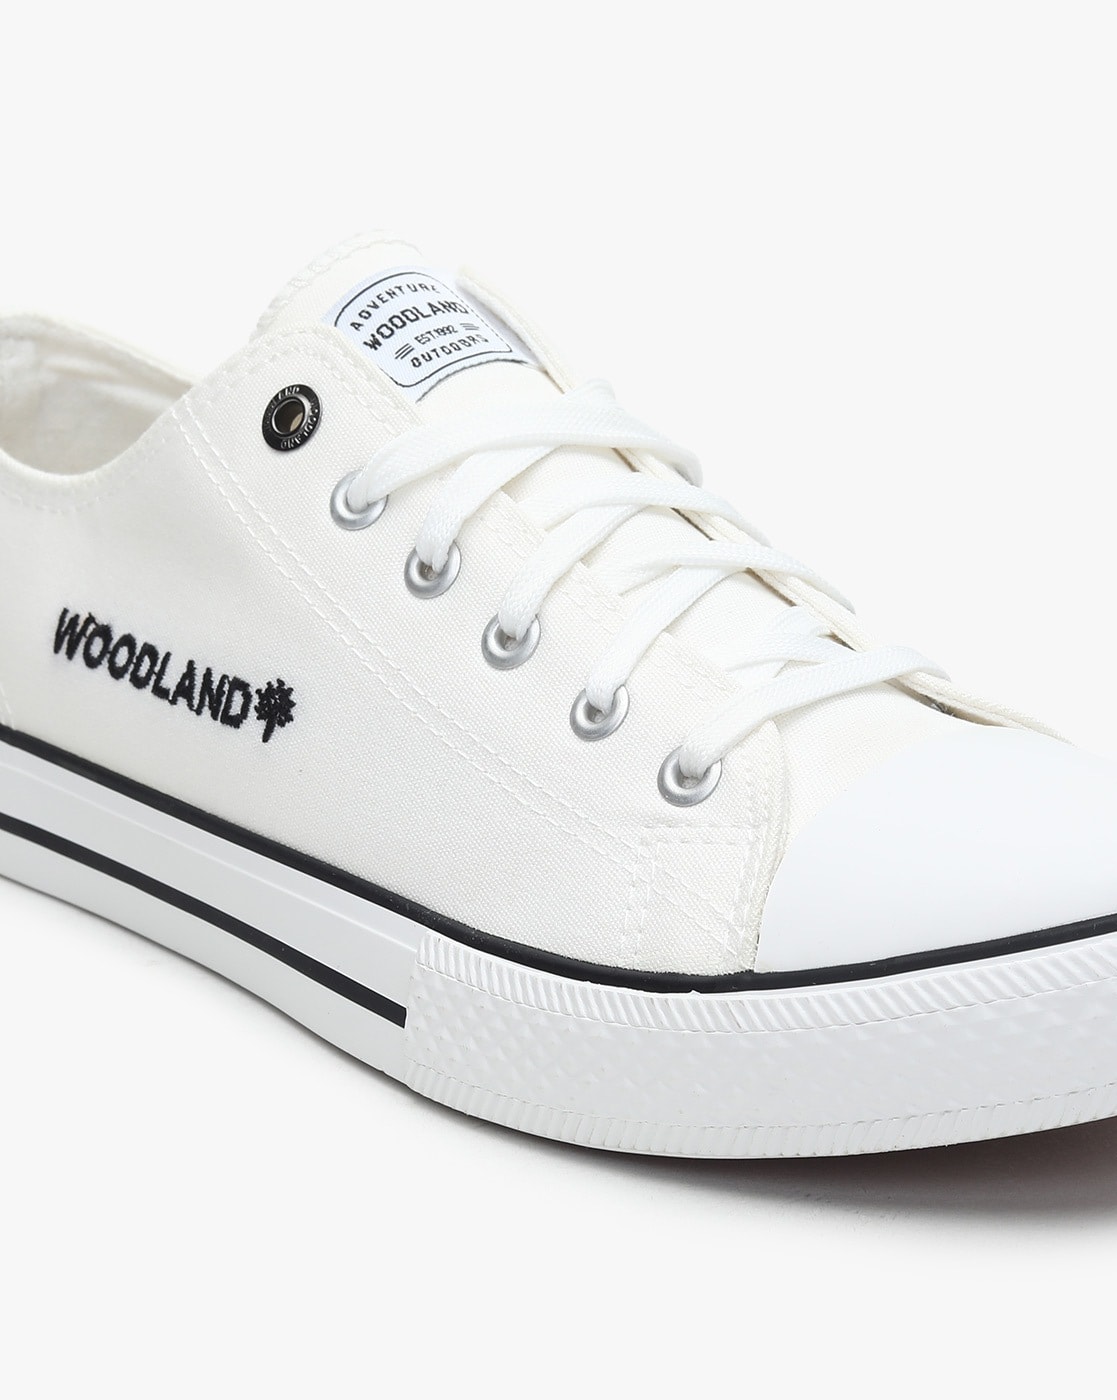 woodland white shoes